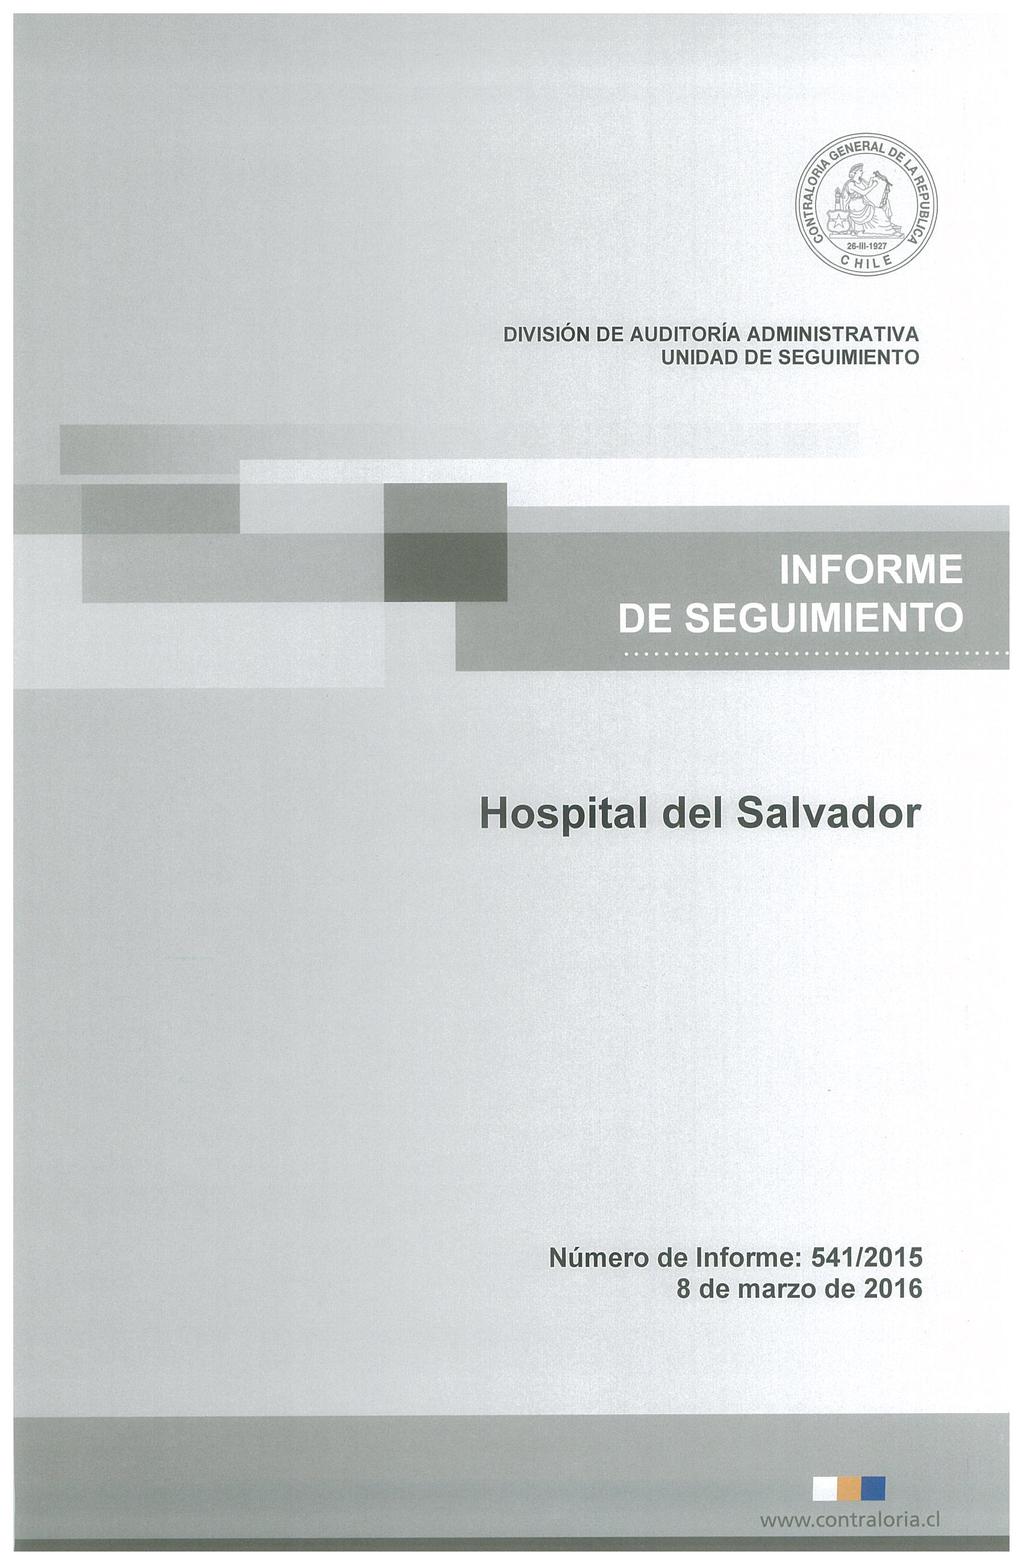 DIVISIÓN DE AUDITORÍA ADMINISTRATIVA INFORME DE SEGUIMIENTO Hospital del